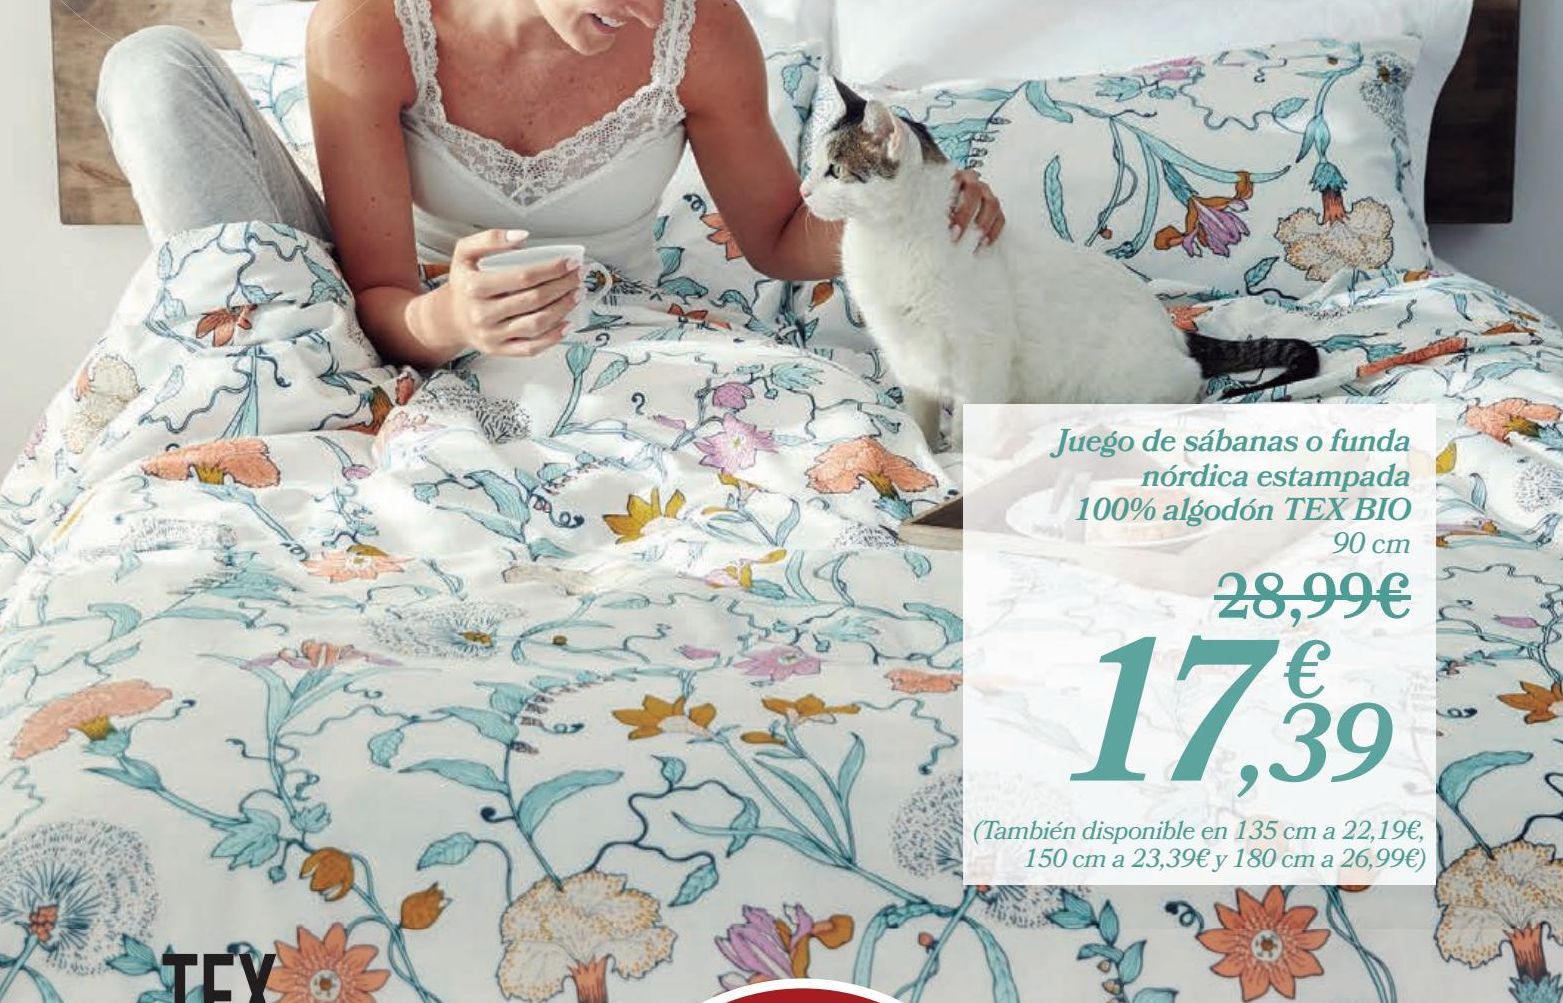 Oferta de Juego de sábanas o funda nórdica estampada 100% algodón TEX BIO por 17,39€